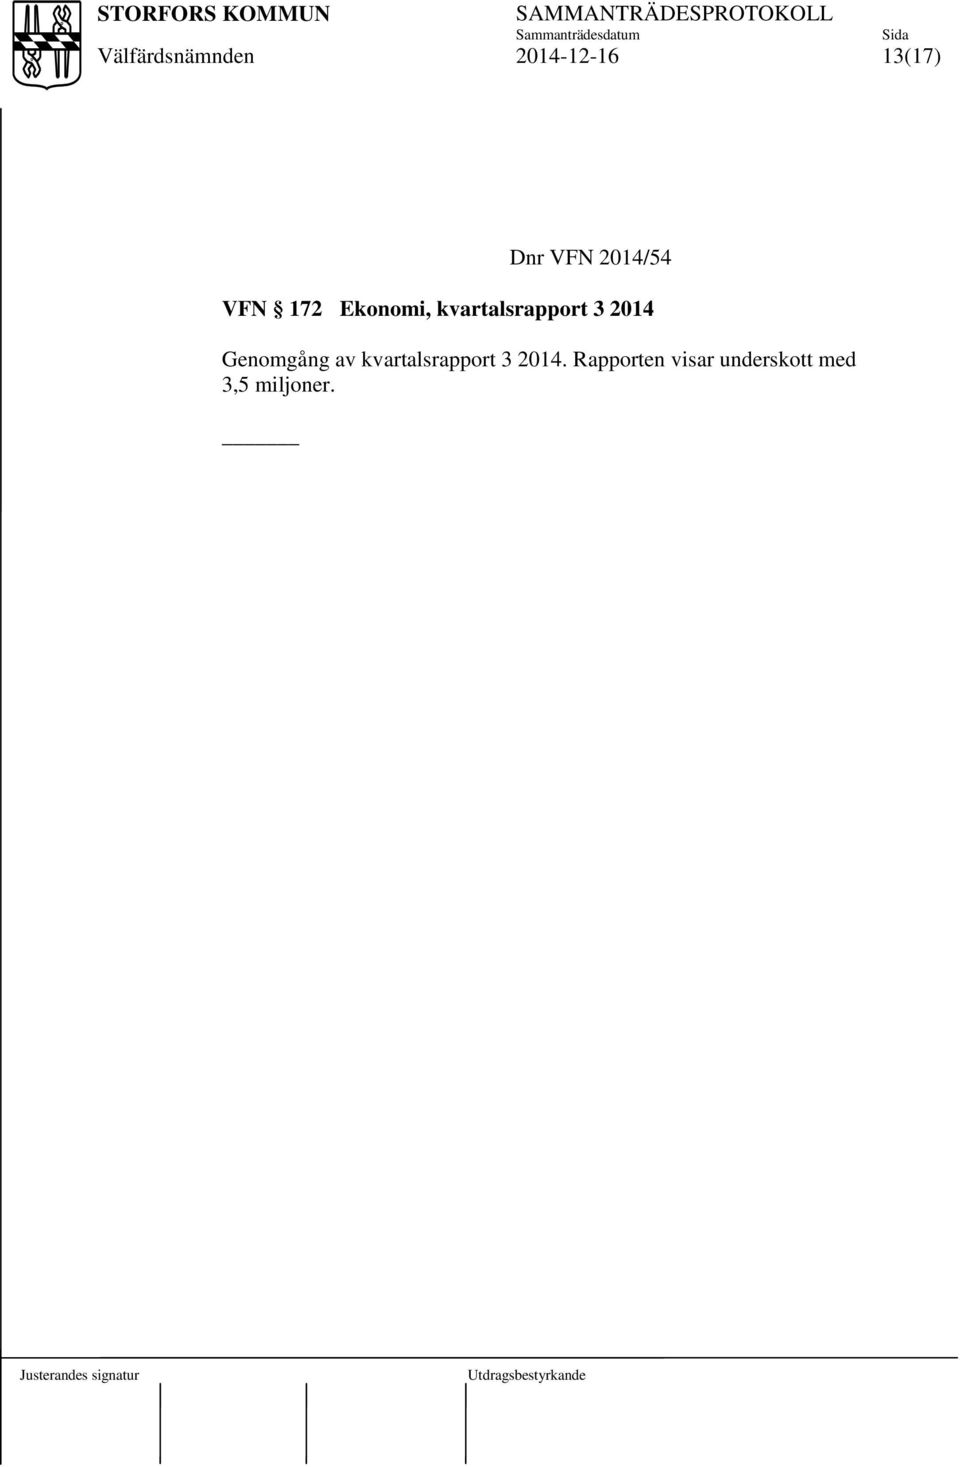 Genomgång av kvartalsrapport 3 2014.